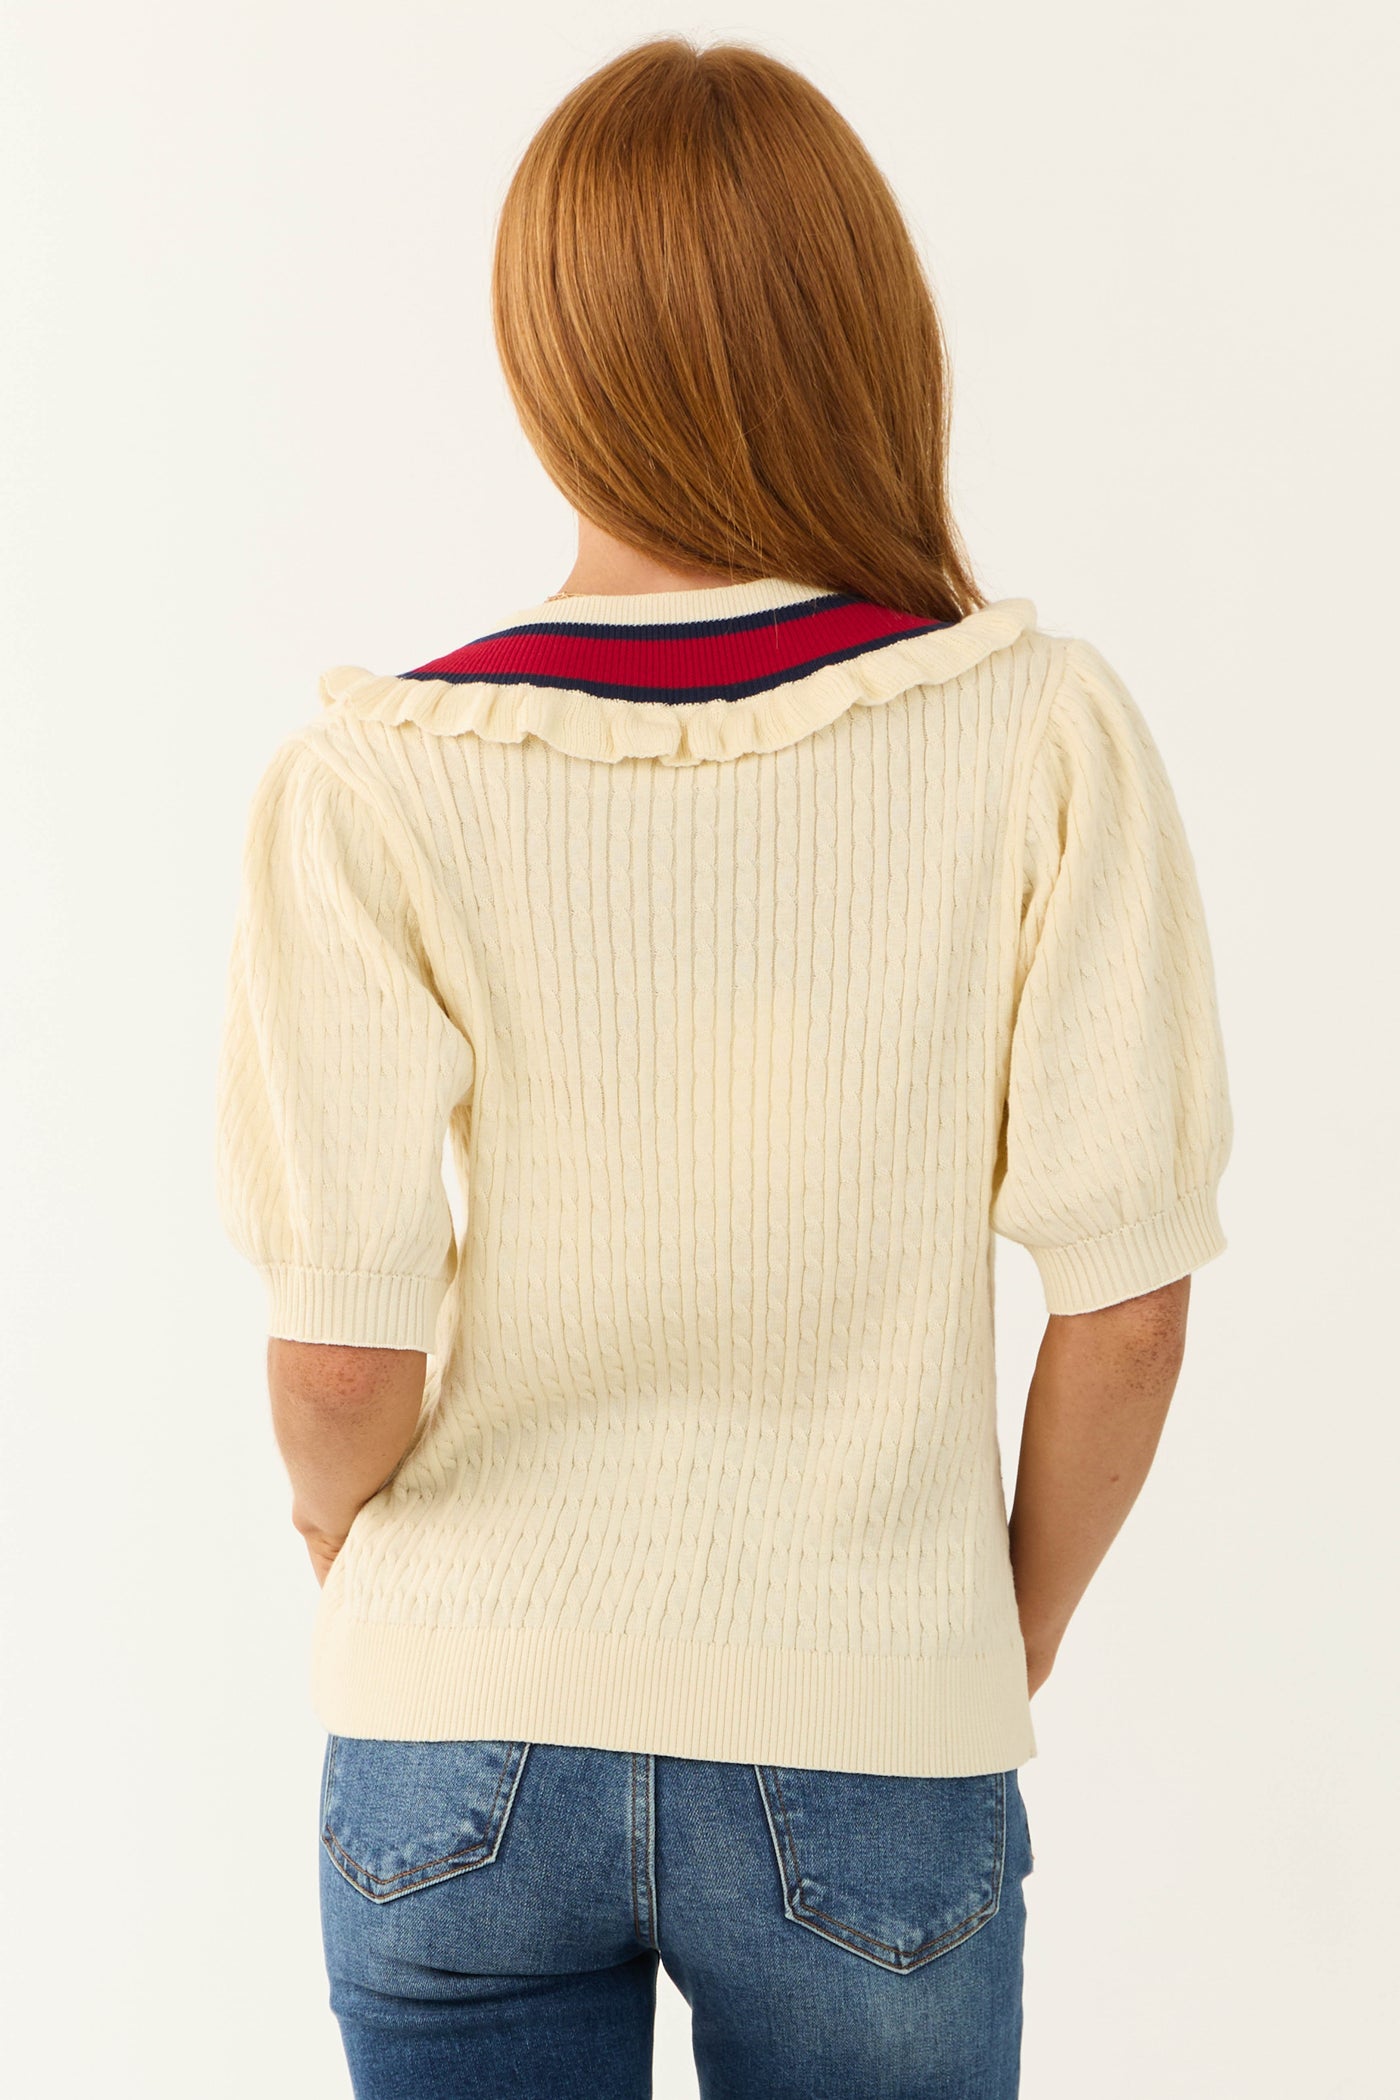 Cream Striped V Neck Sweater Top